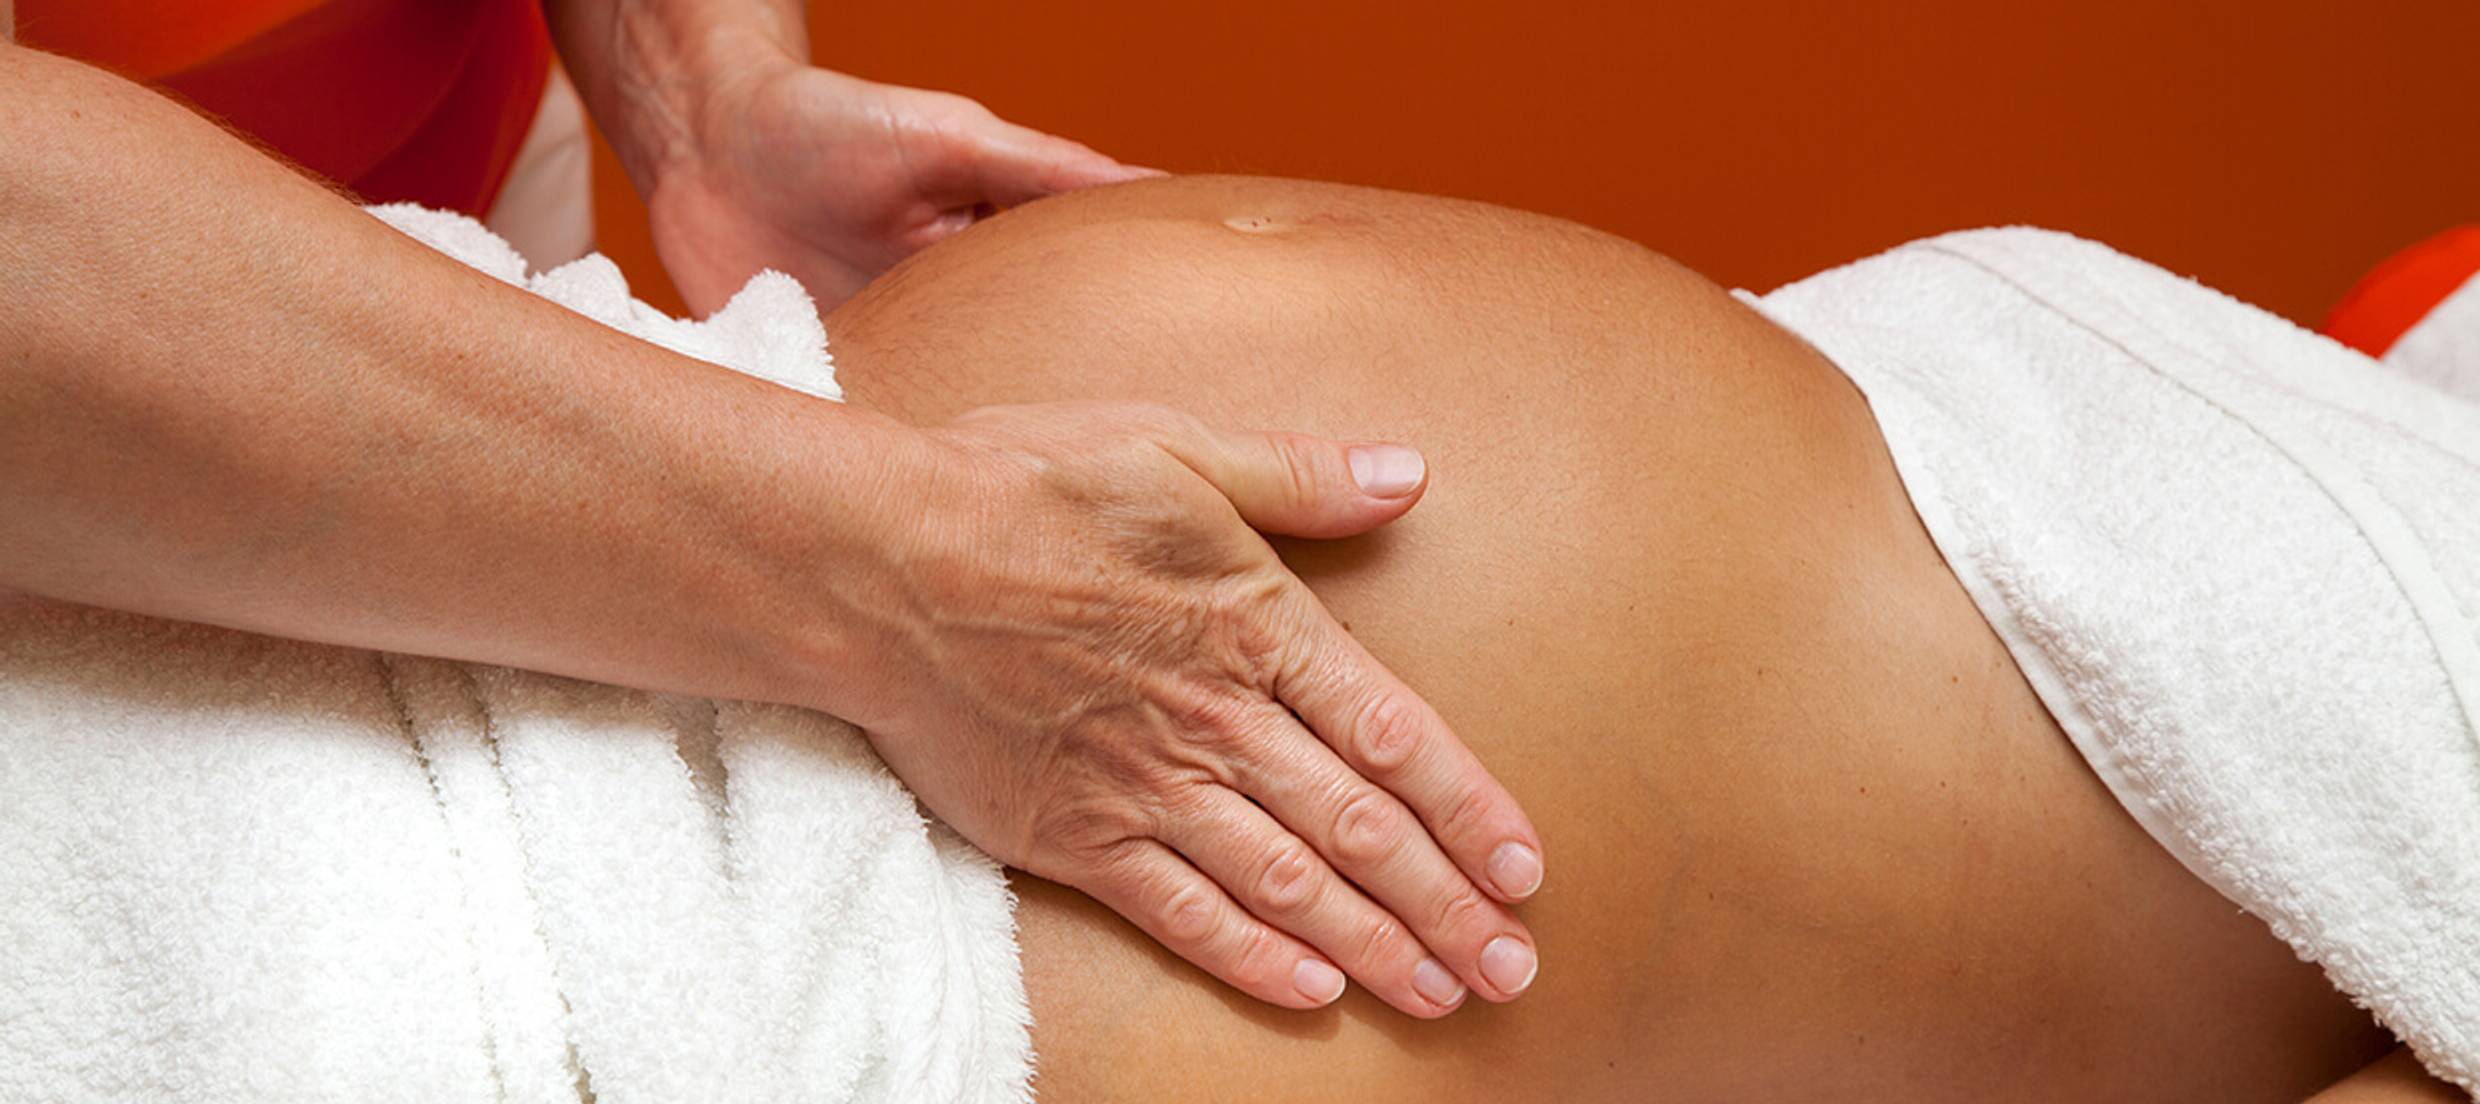 Prenatal Massage Benefits by Therapist